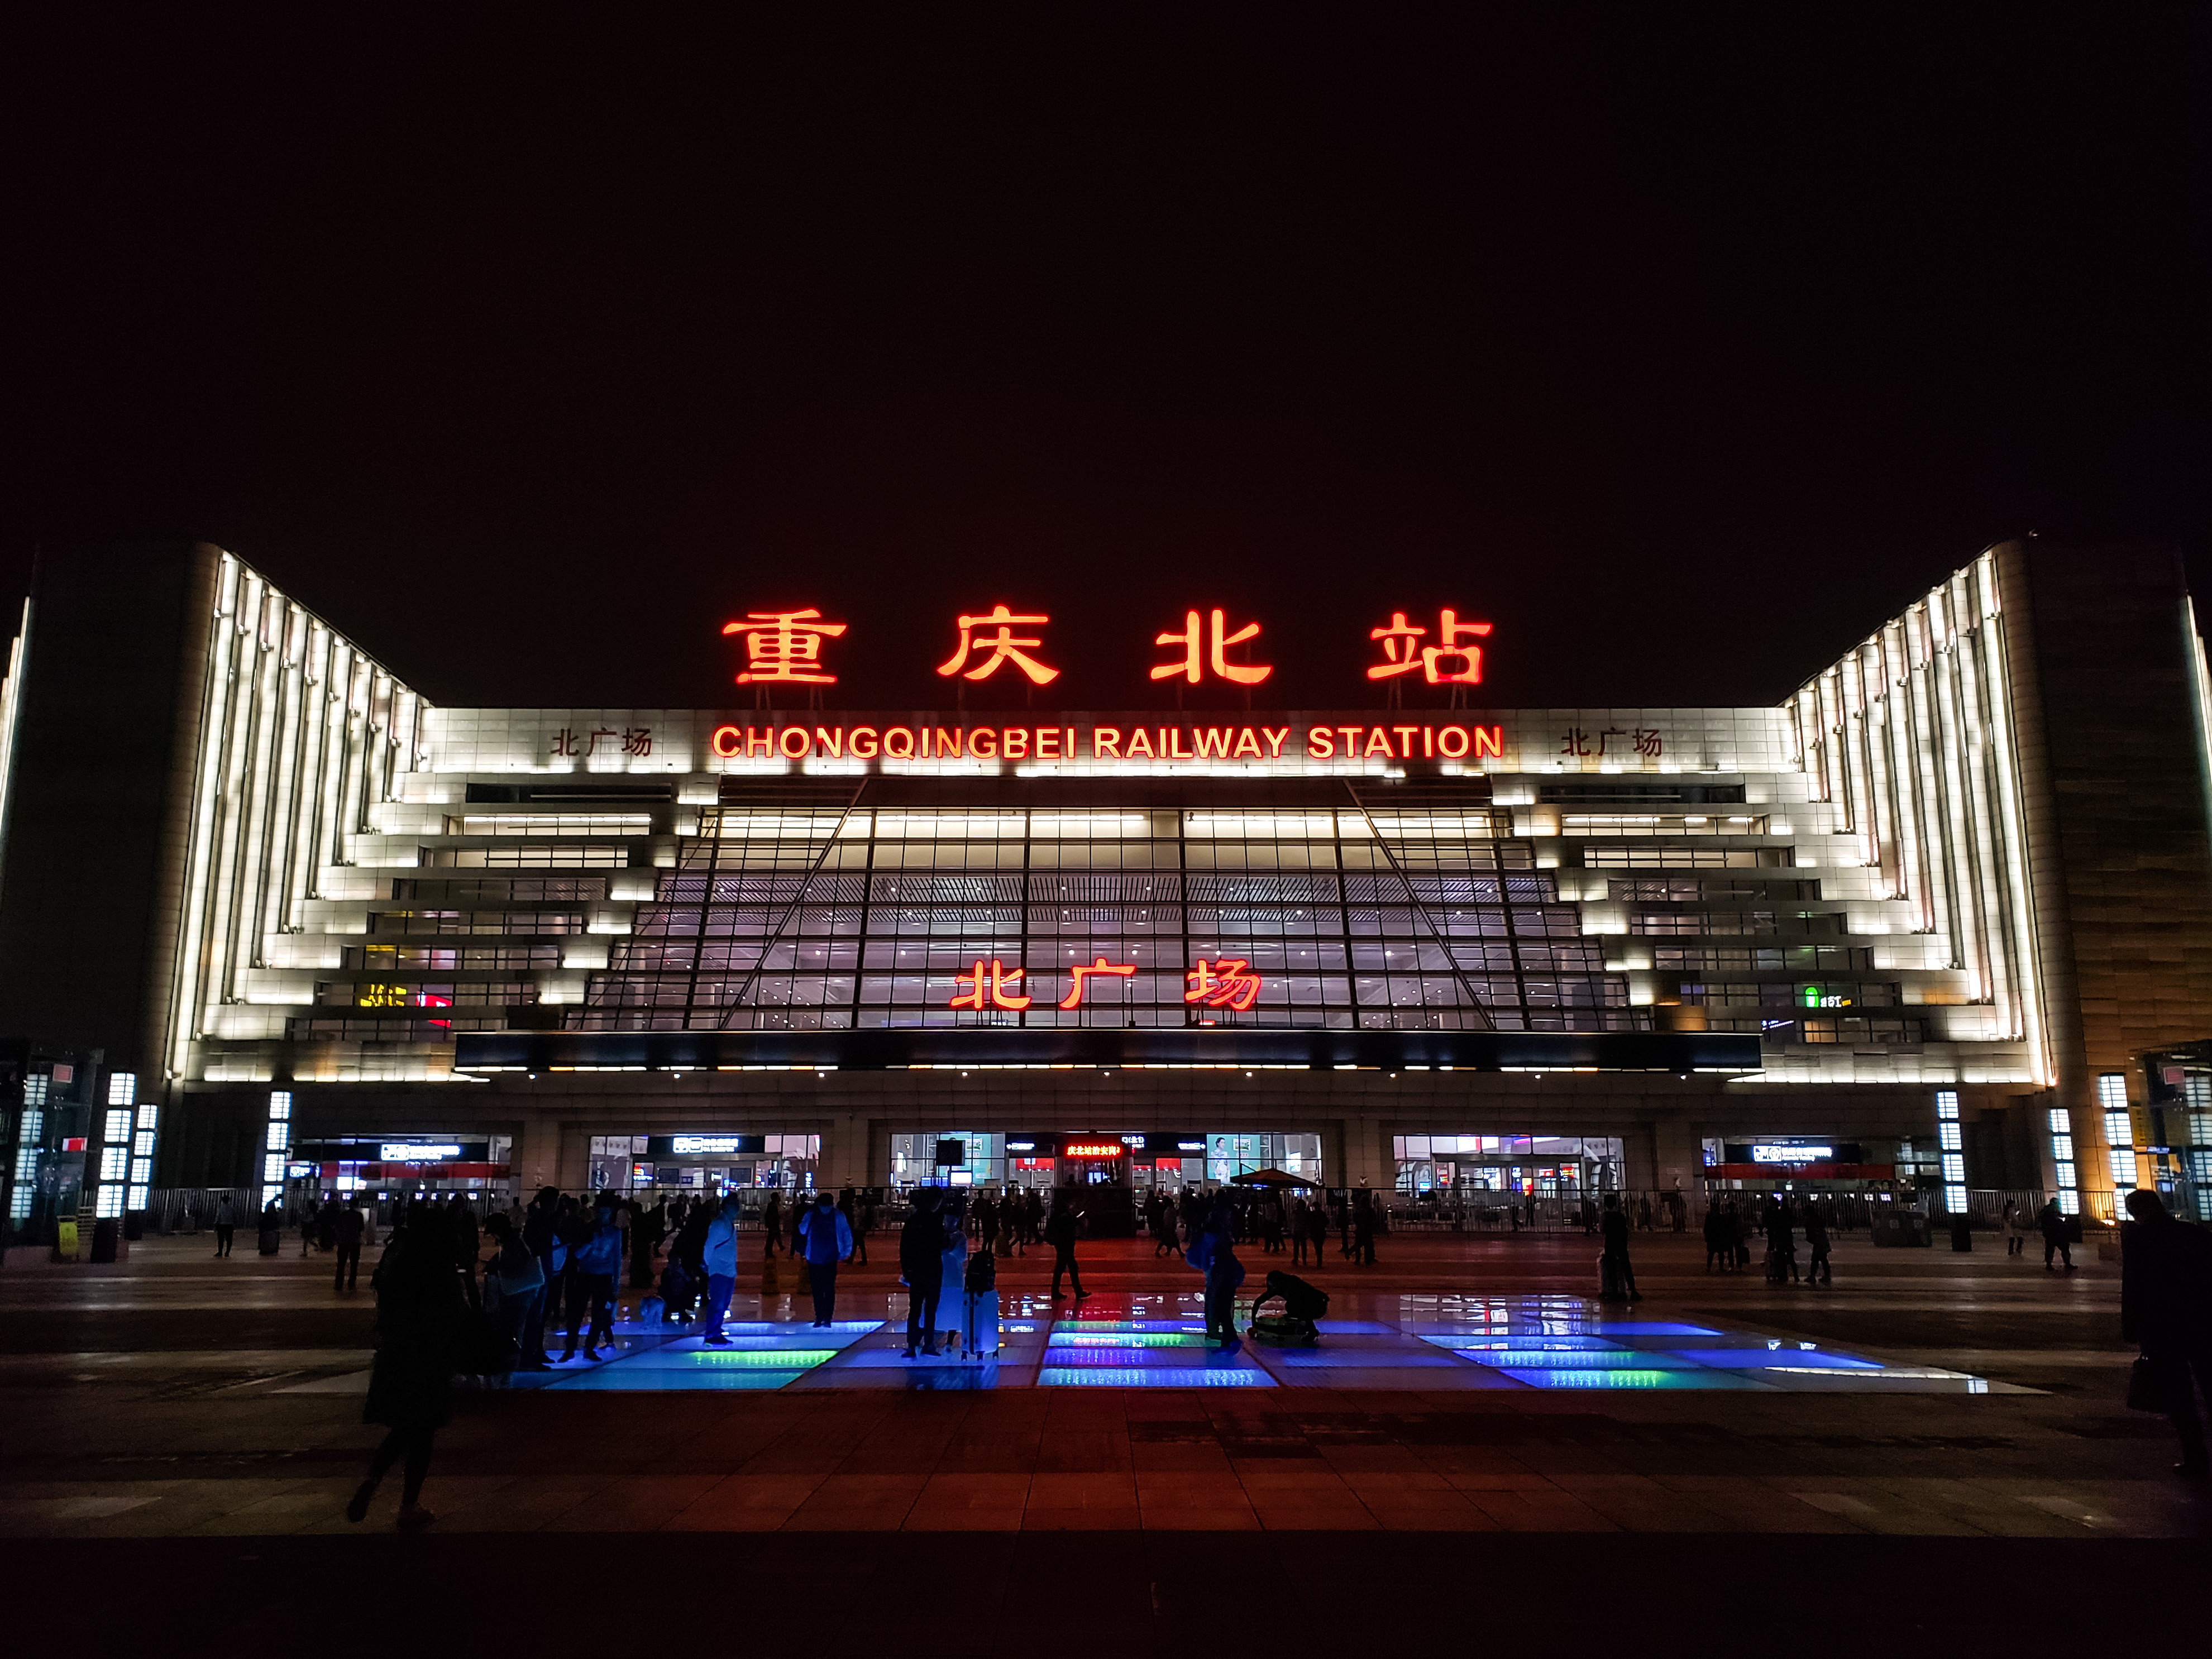 重庆北站(旧称龙头寺火车站)